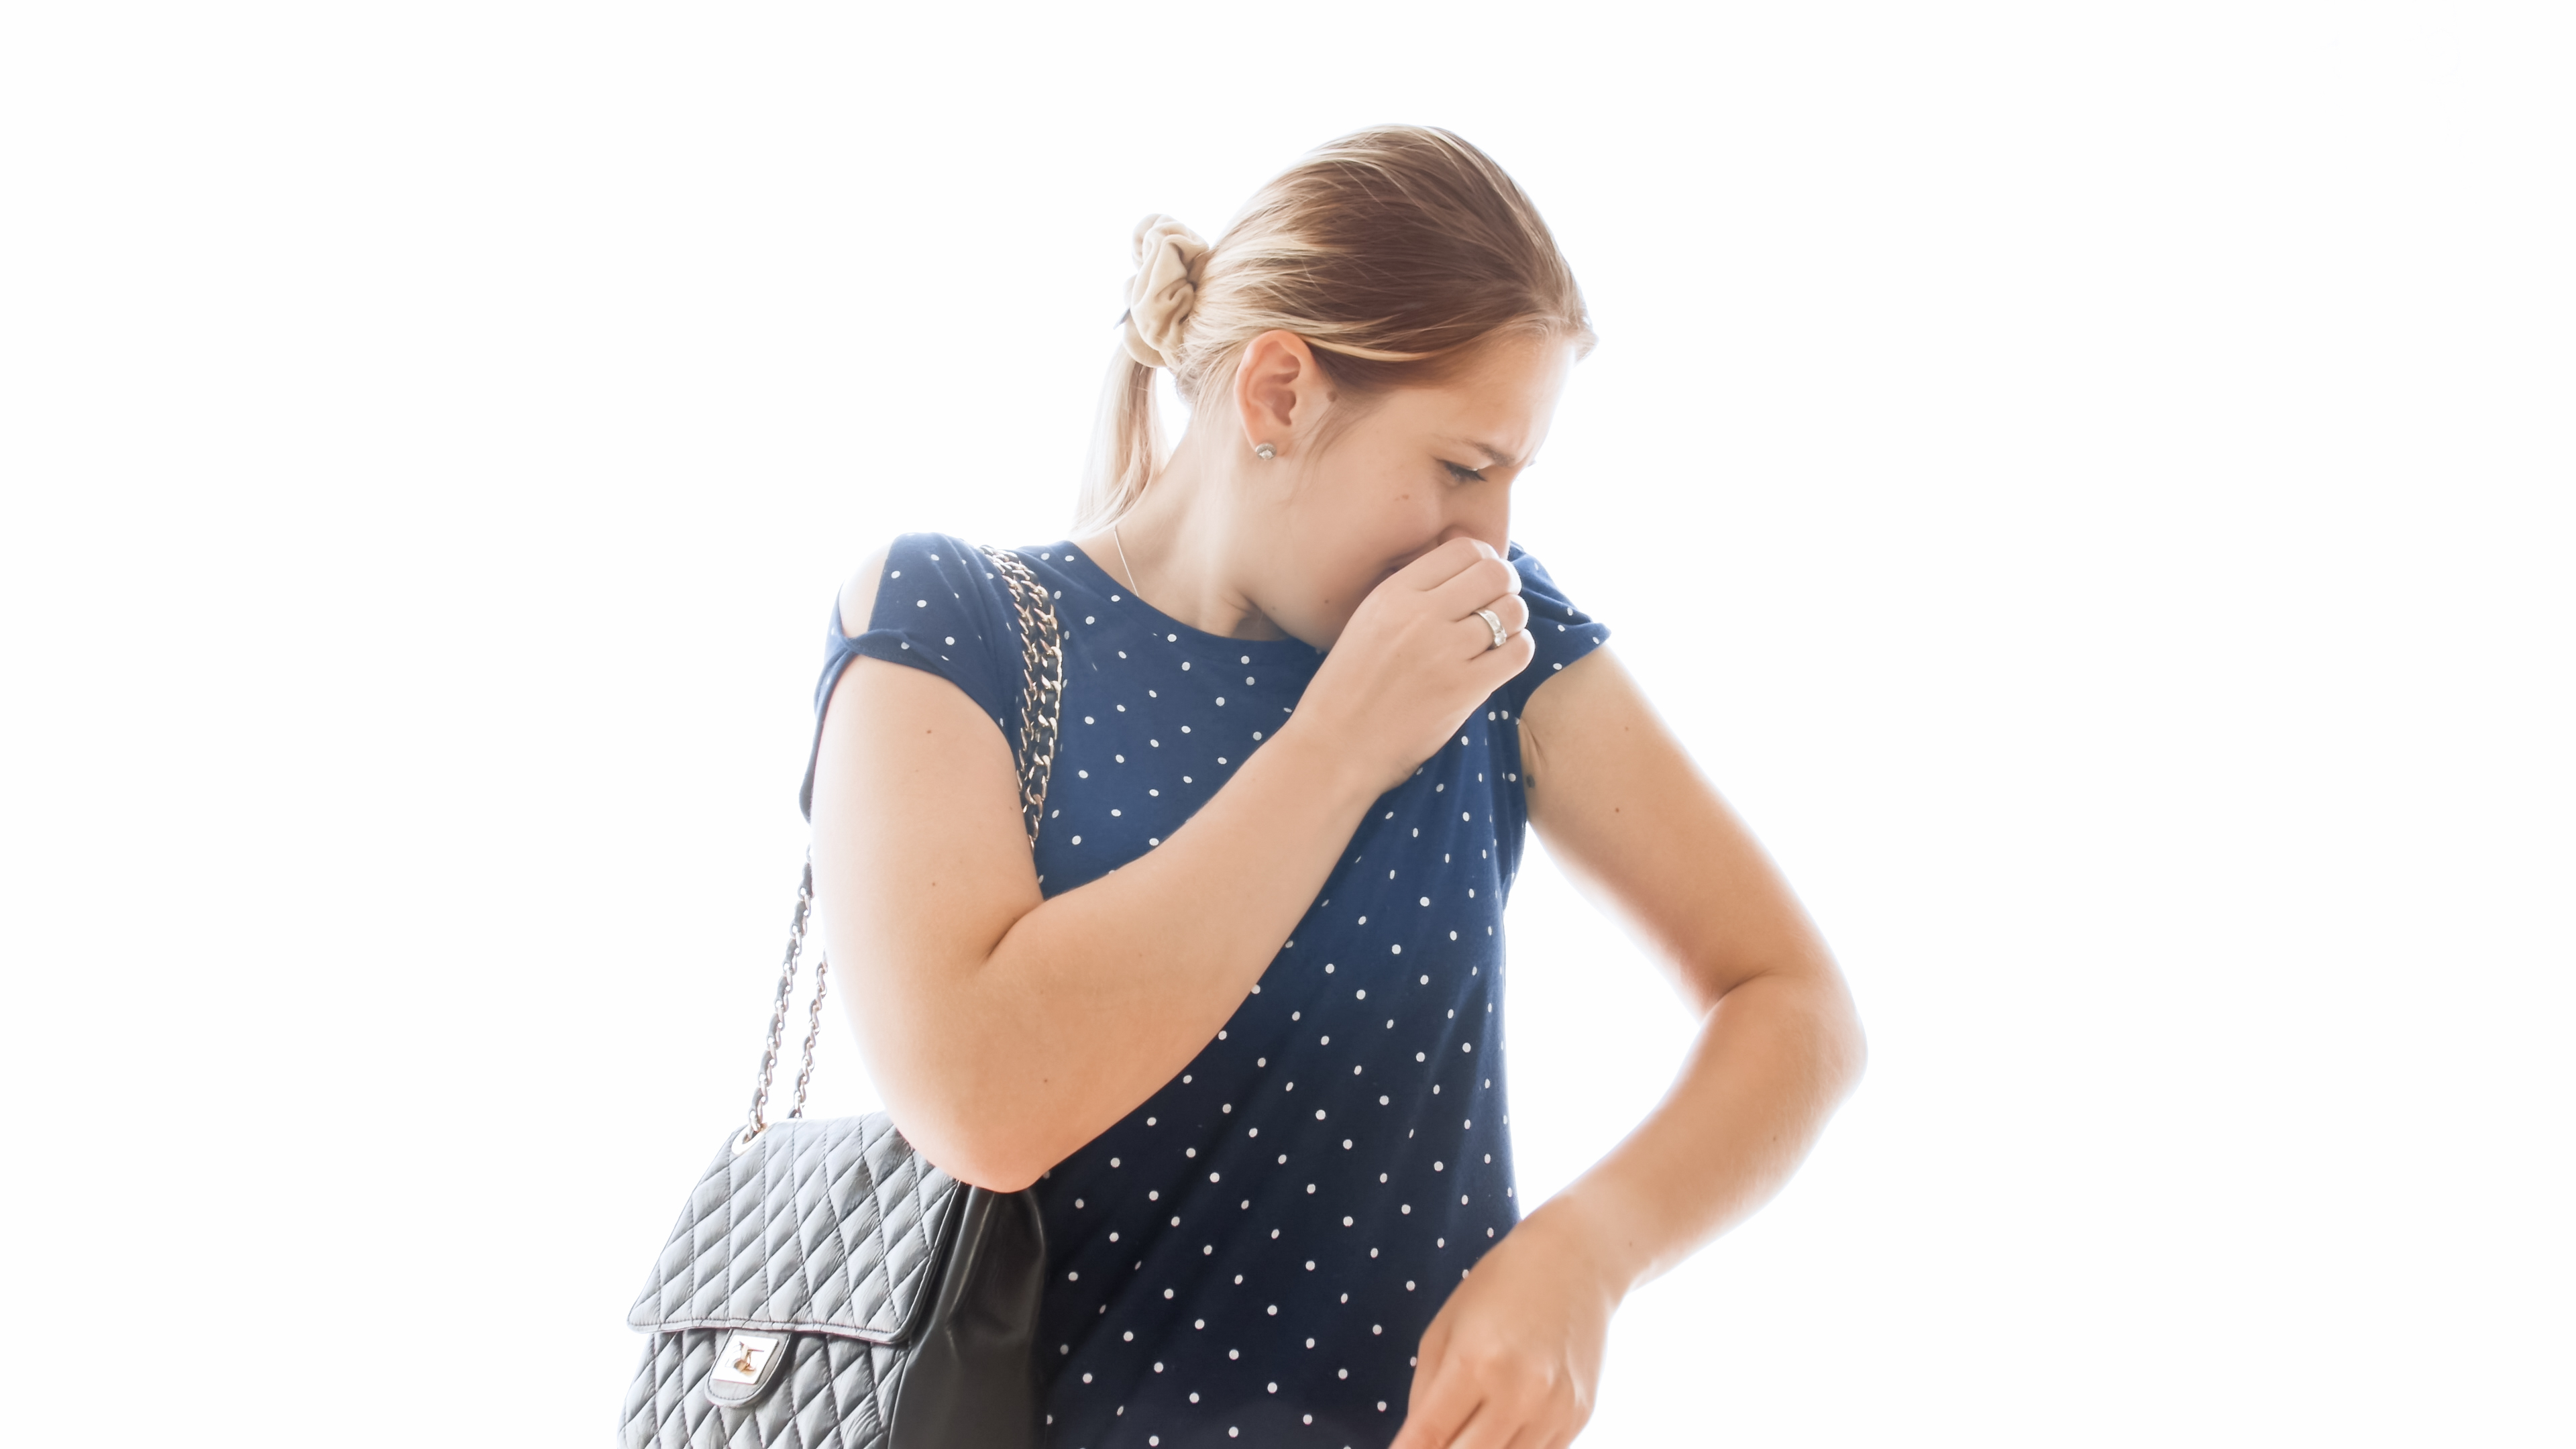 Frau riecht an ihrer Kleidung | Quelle: Shutterstock